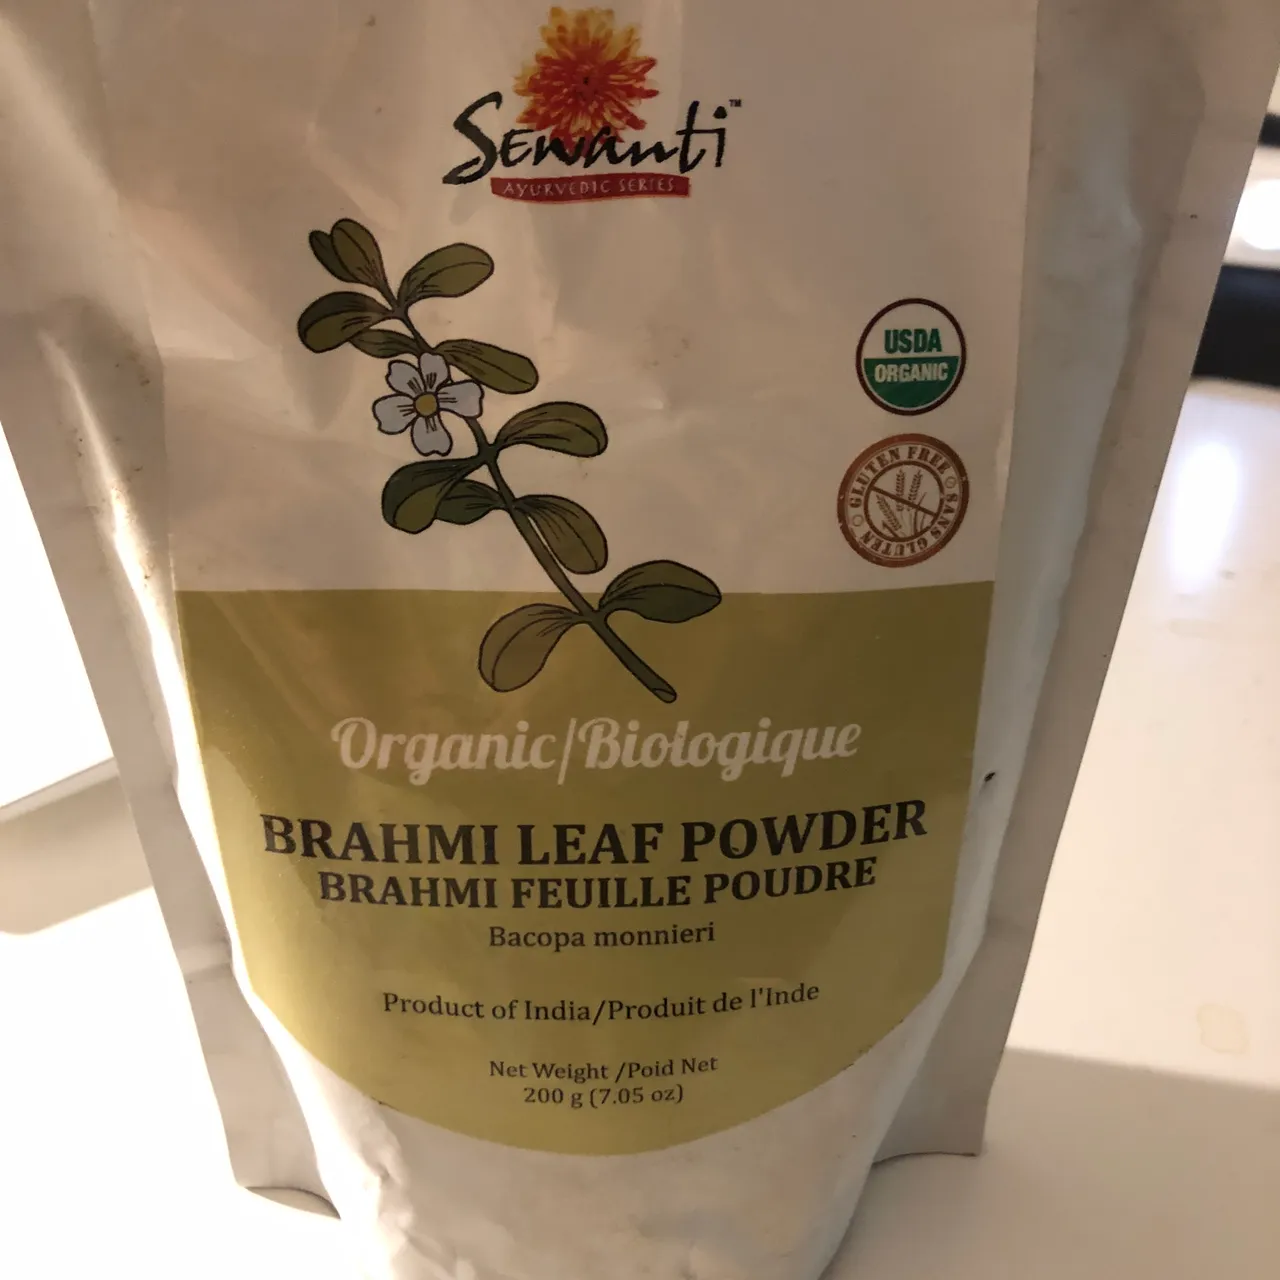 Brahmi leaf/backpack powder cognitive boost photo 1